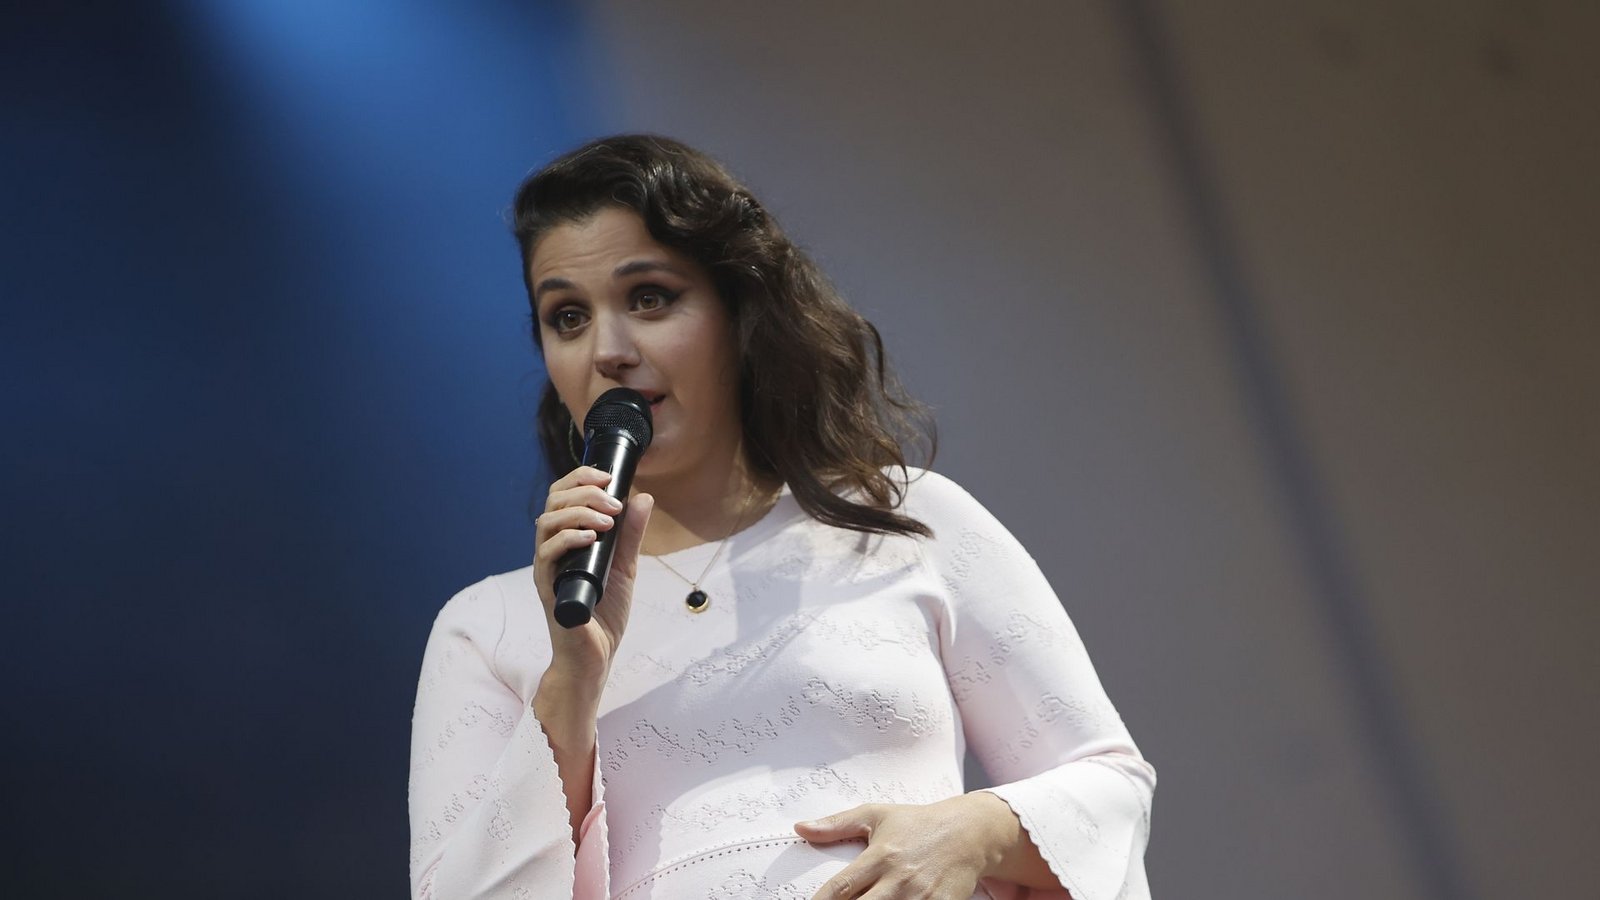 Die schwangere Sängerin Katie Melua bei einem Konzert in Halle.Foto: Matthias Bein/dpa